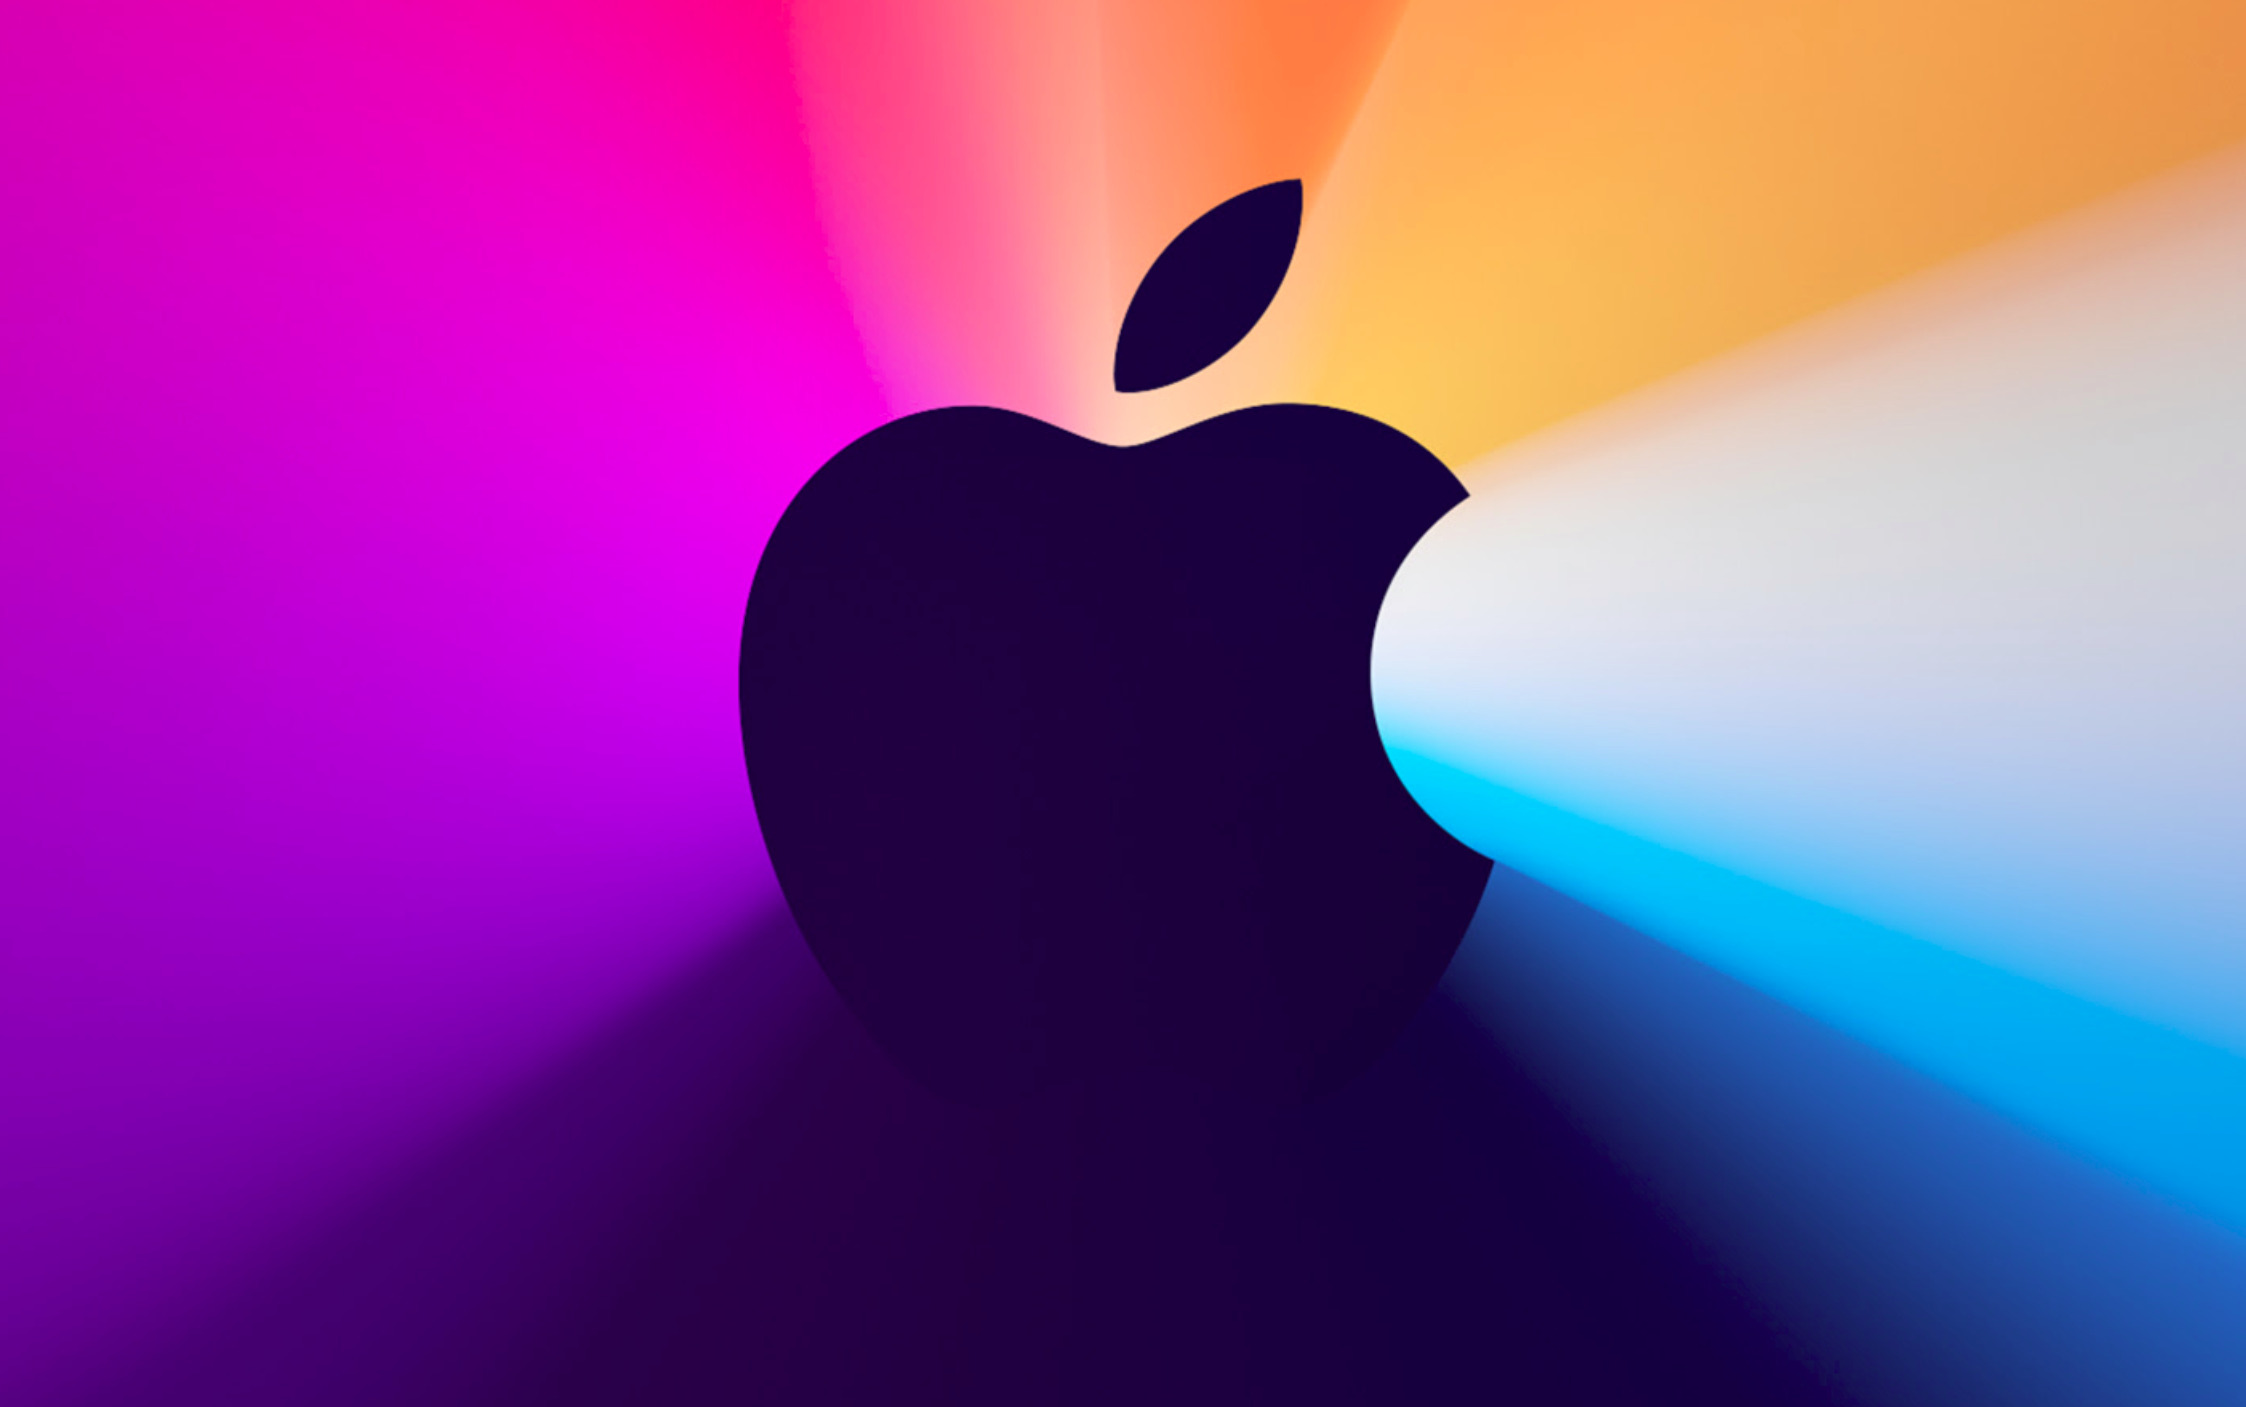 Apple näitab järgmisel nädalal ilmselt uue põlvkonna MacBooke - Digigeenius